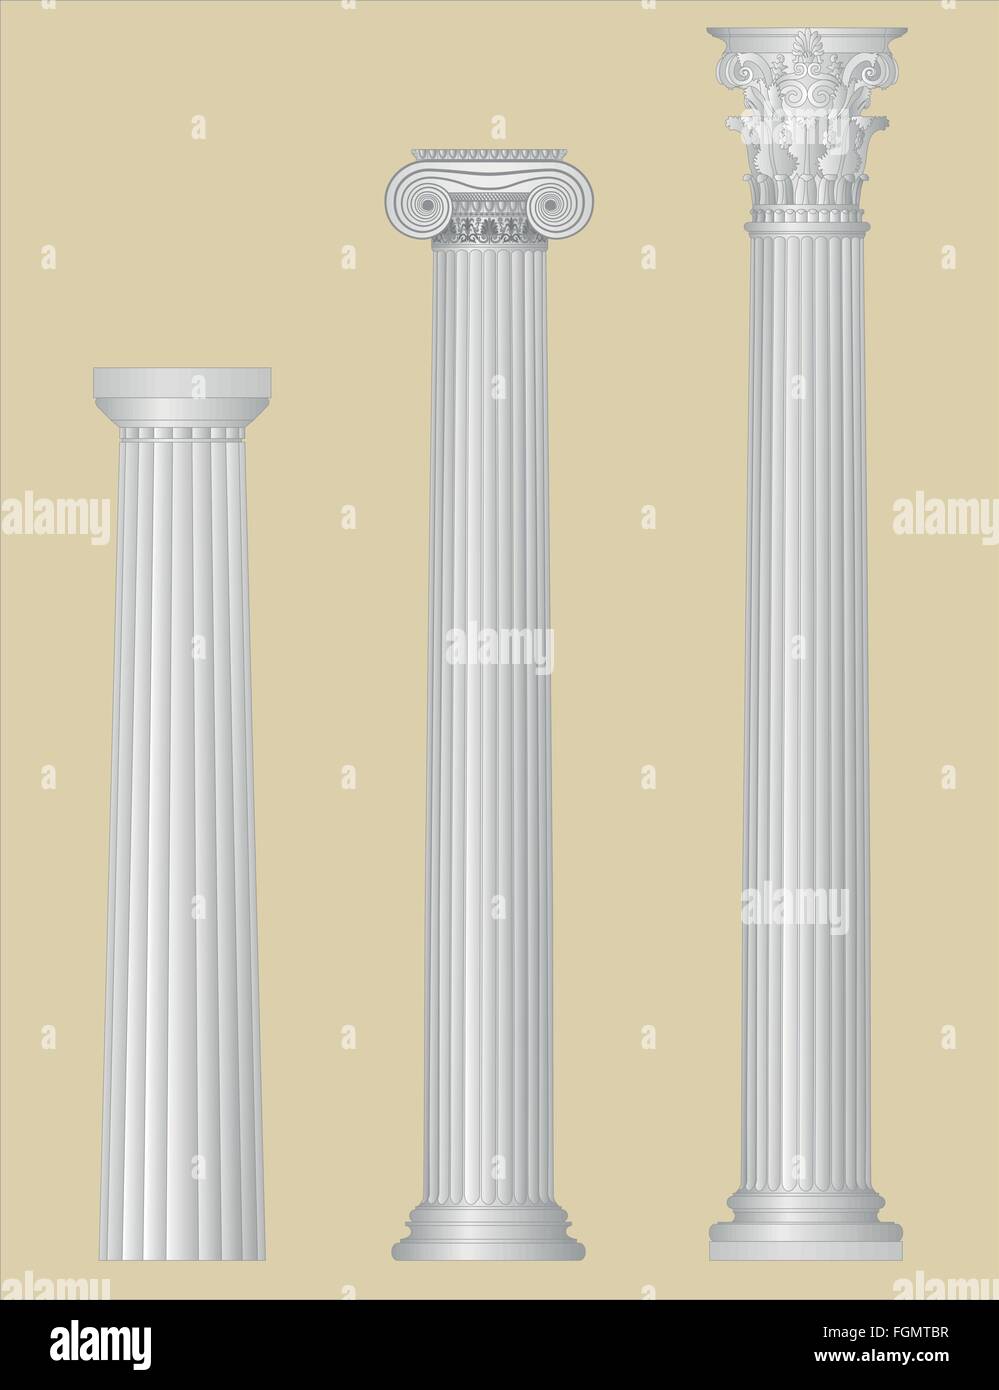 Griechische Säulen mit details Stock Vektor